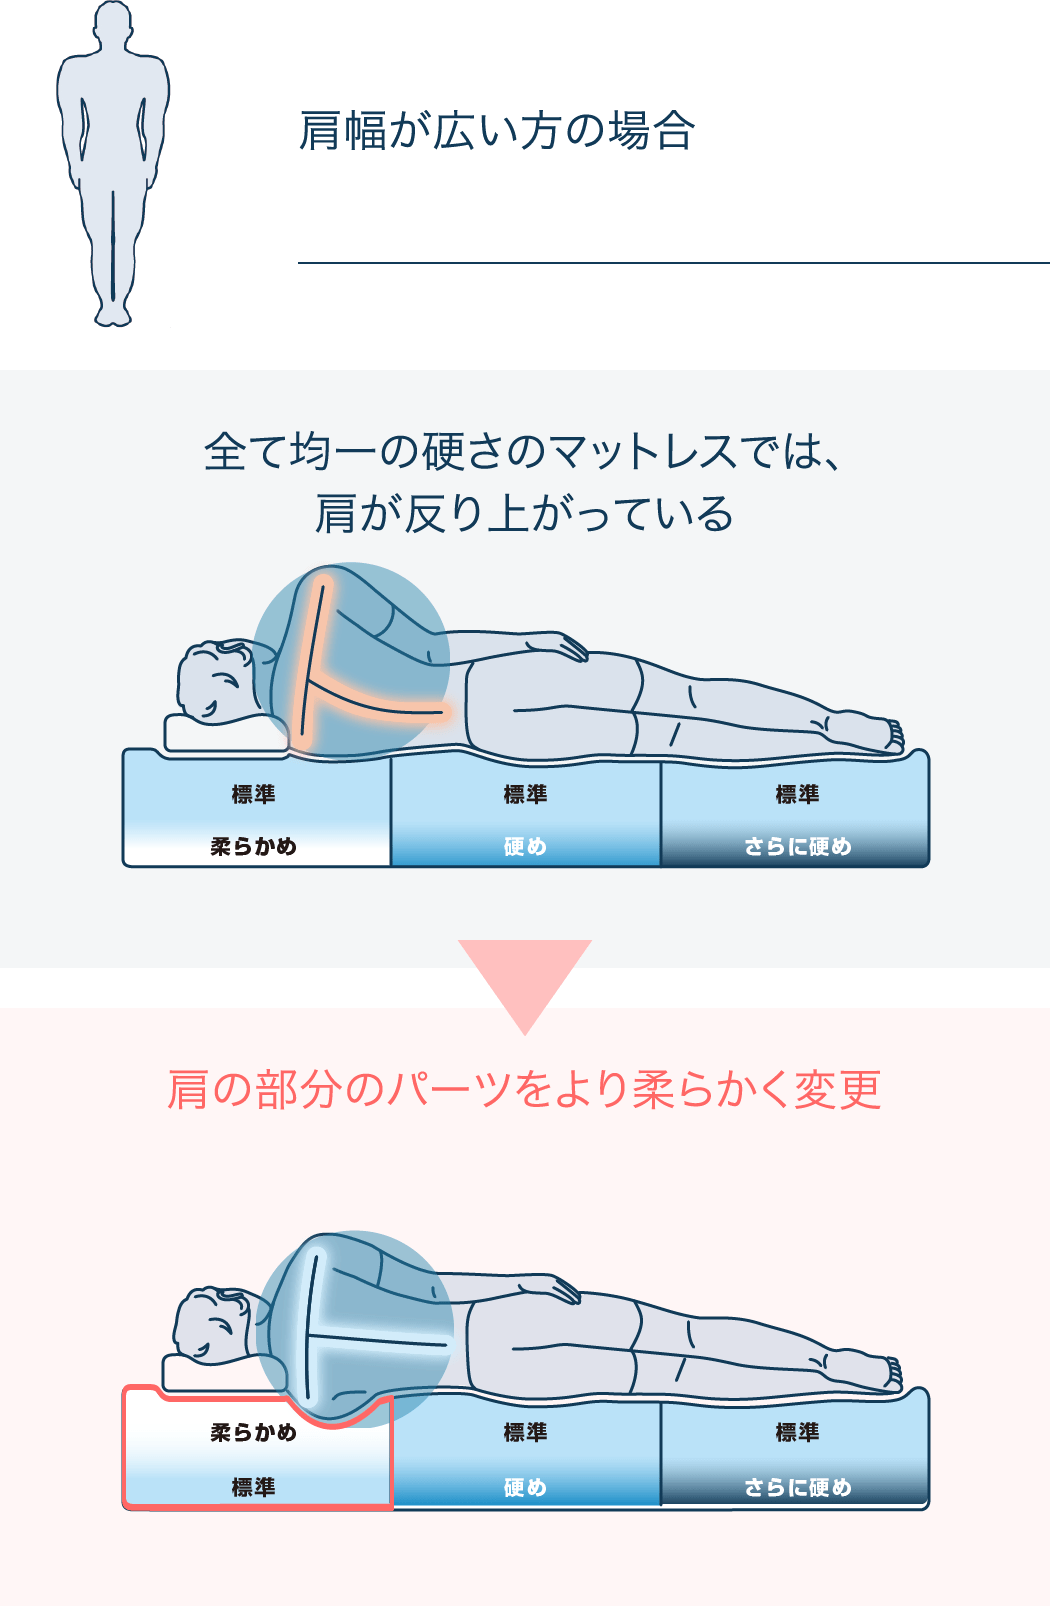 東京大会選手村への提供寝具 寝具メーカー エアウィーヴ